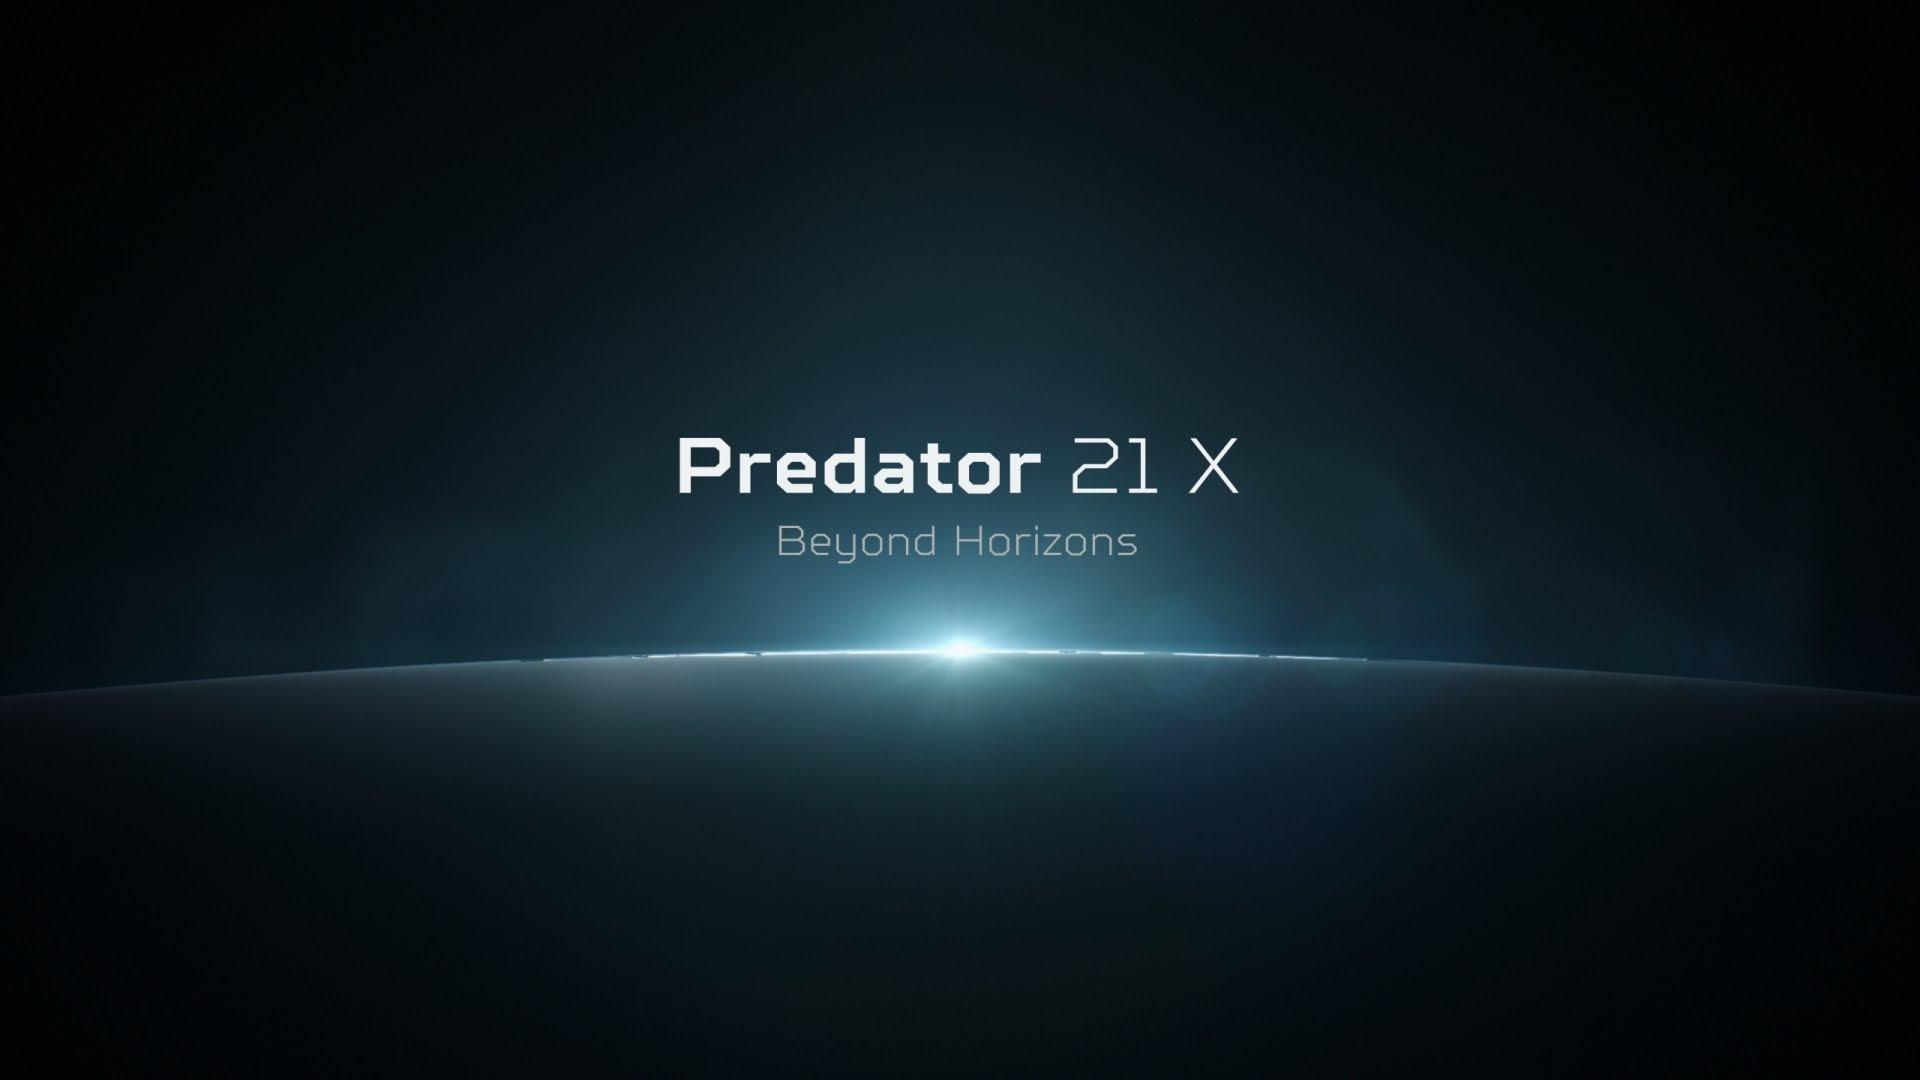 Acer. Predator 21 X Gaming Laptop